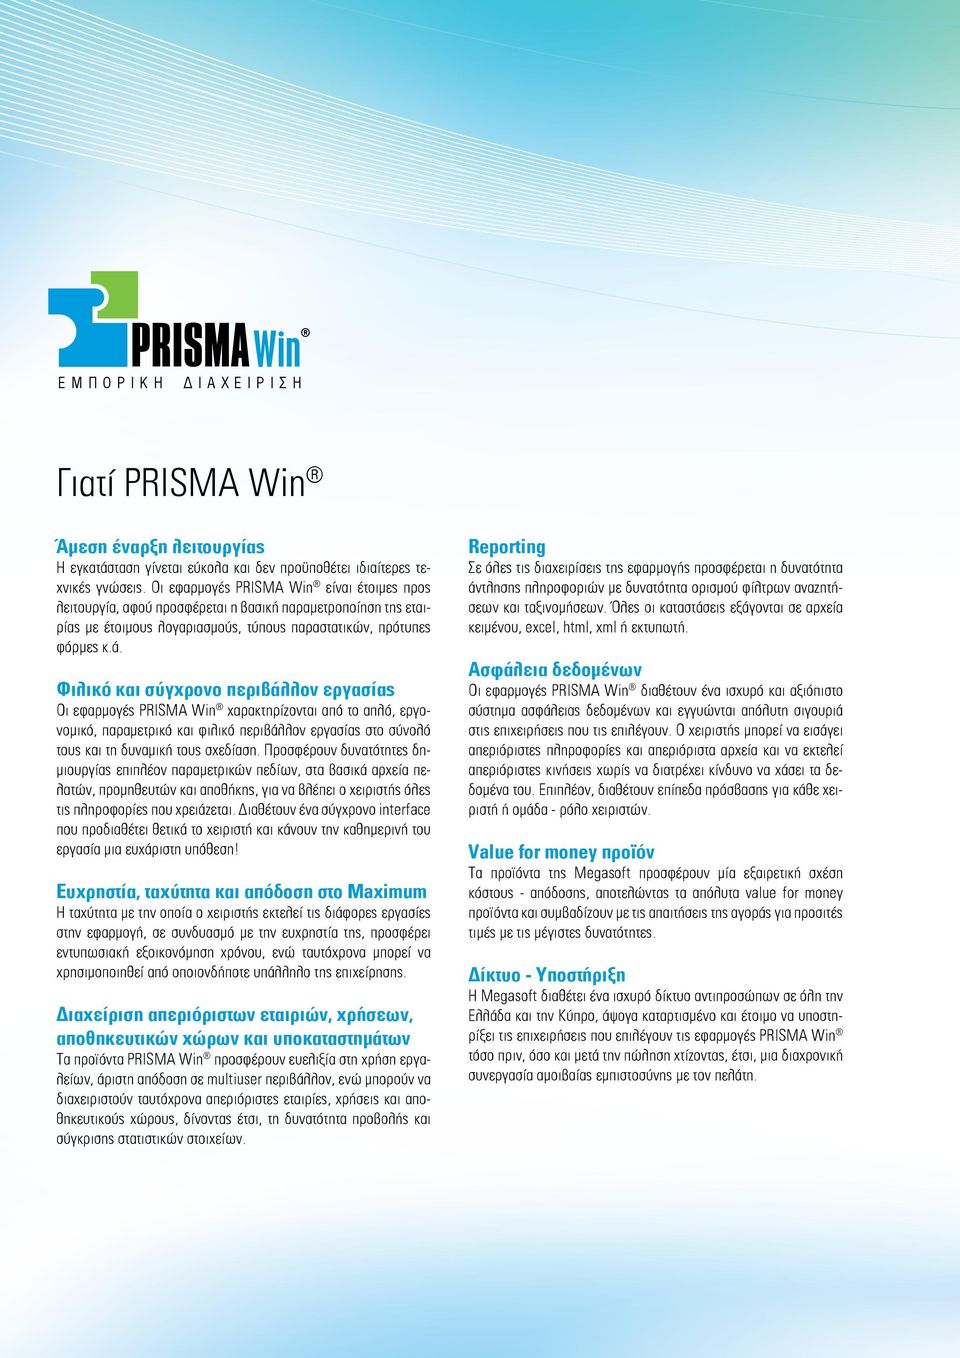 Φιλικό και σύγχρονο περιβάλλον εργασίας Οι εφαρμογές PRISMA Win χαρακτηρίζονται από το απλό, εργονομικό, παραμετρικό και φιλικό περιβάλλον εργασίας στο σύνολό τους και τη δυναμική τους σχεδίαση.